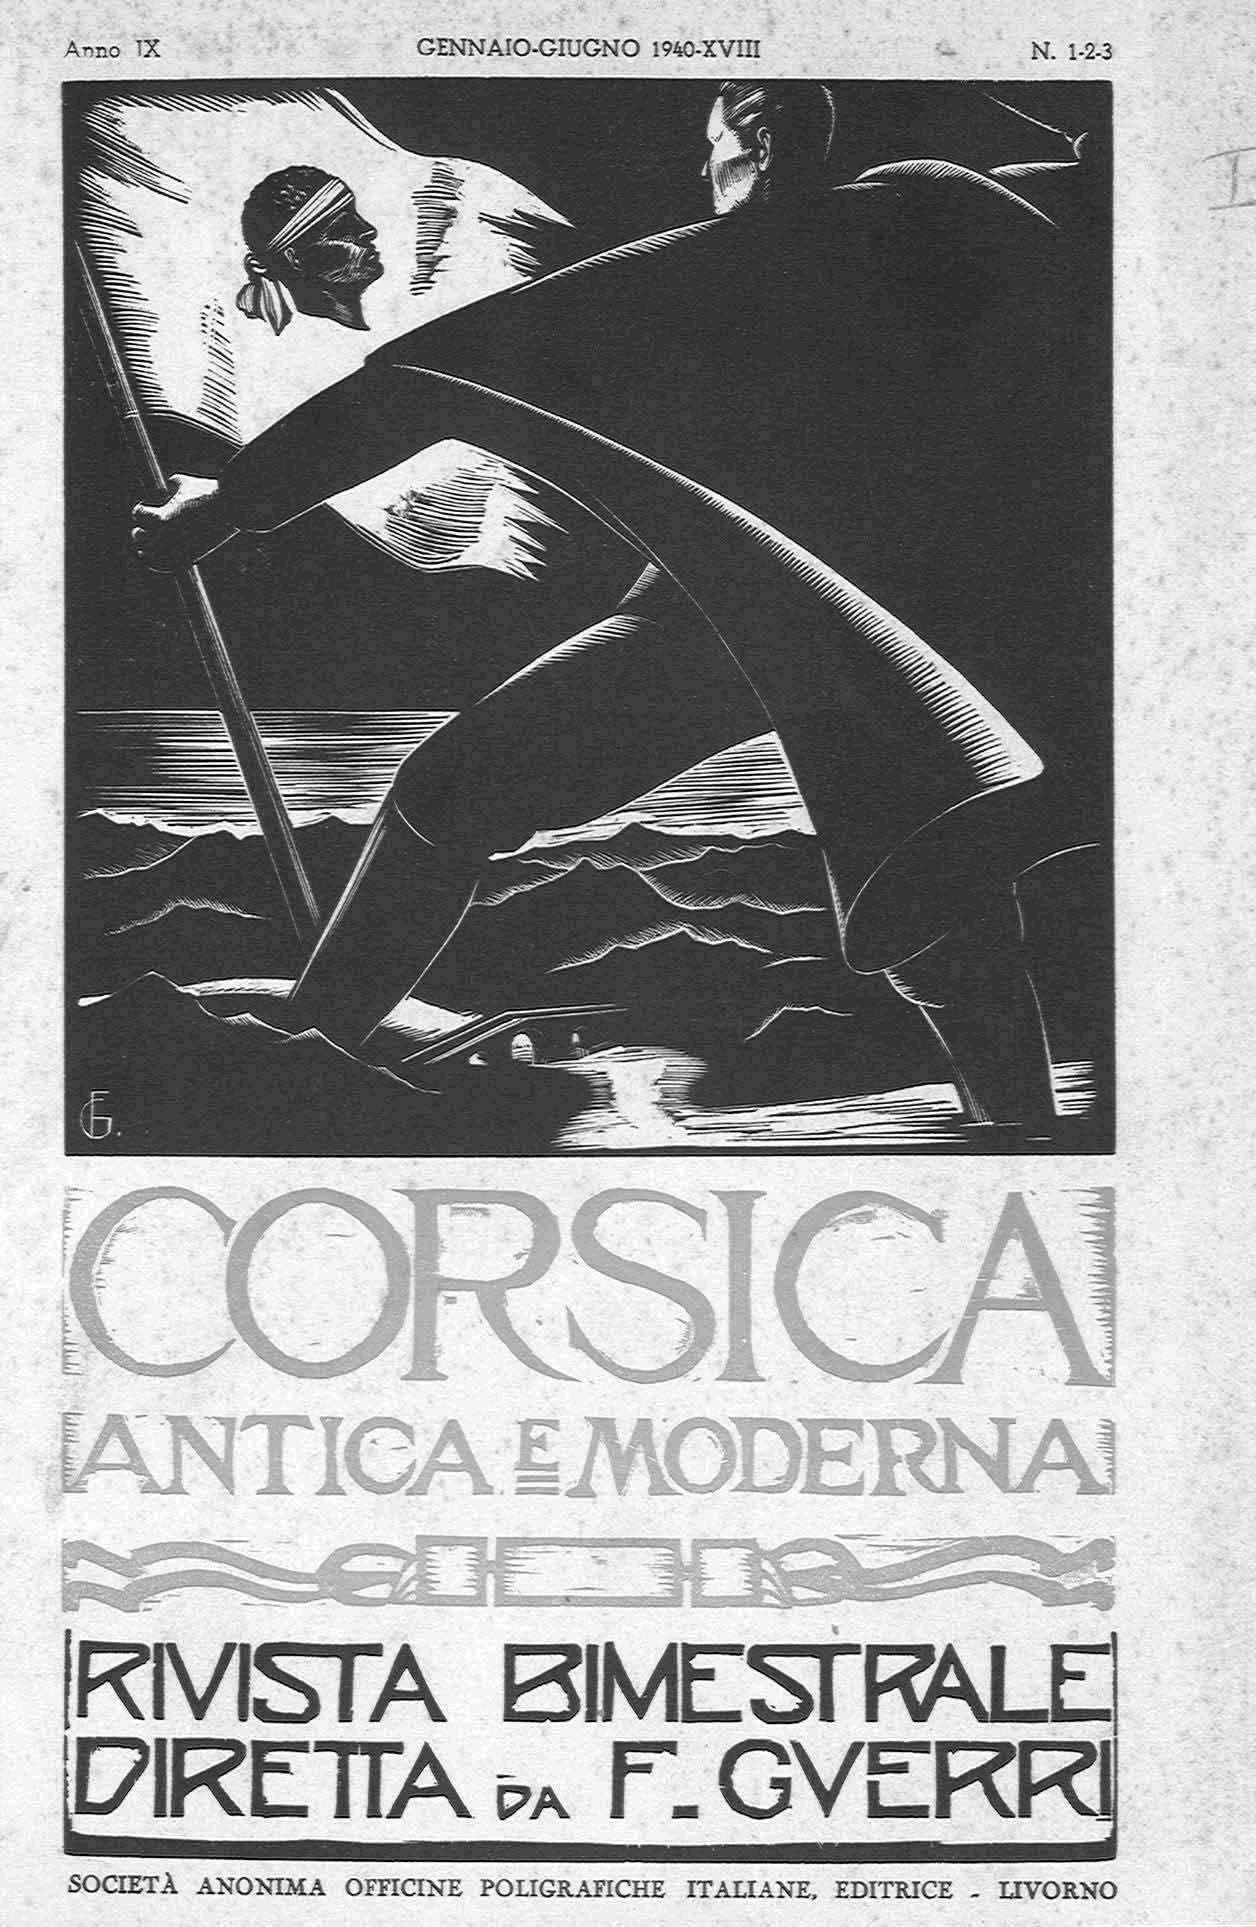 >Corsica Antica e Moderna (1940)